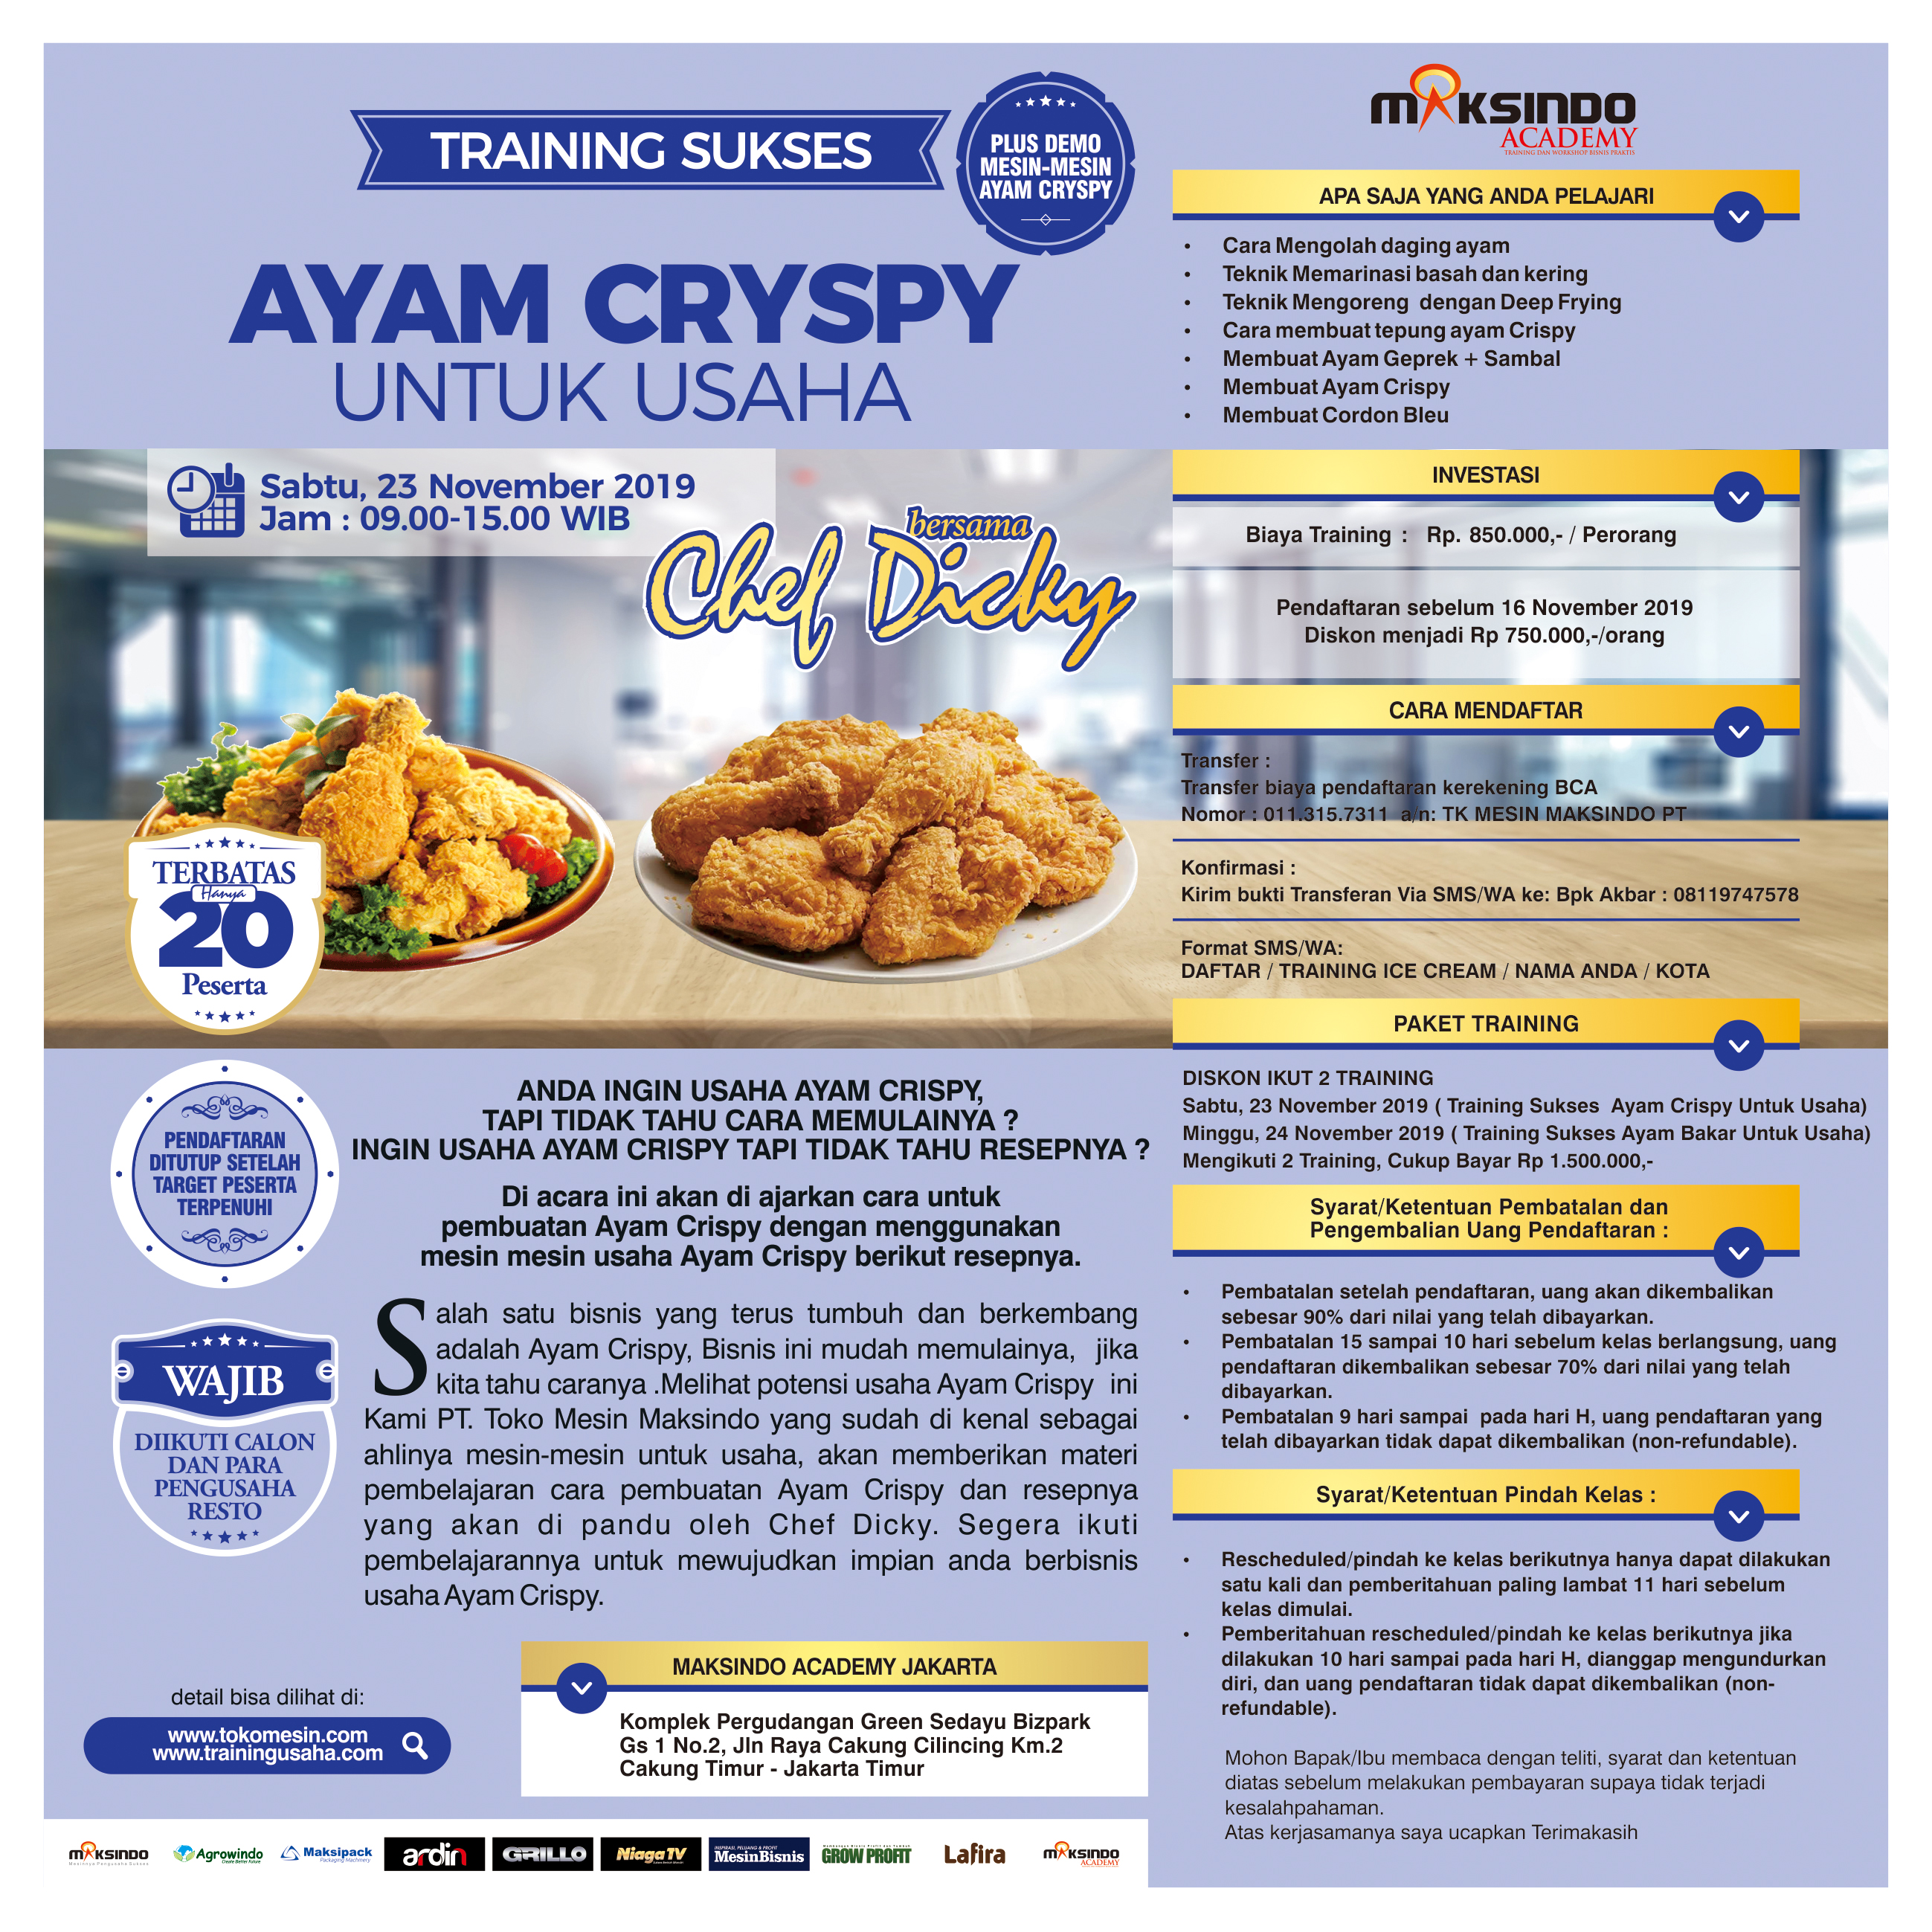 Training Sukses Ayam Crispy Untuk Usaha, Sabtu, 23 November 2019